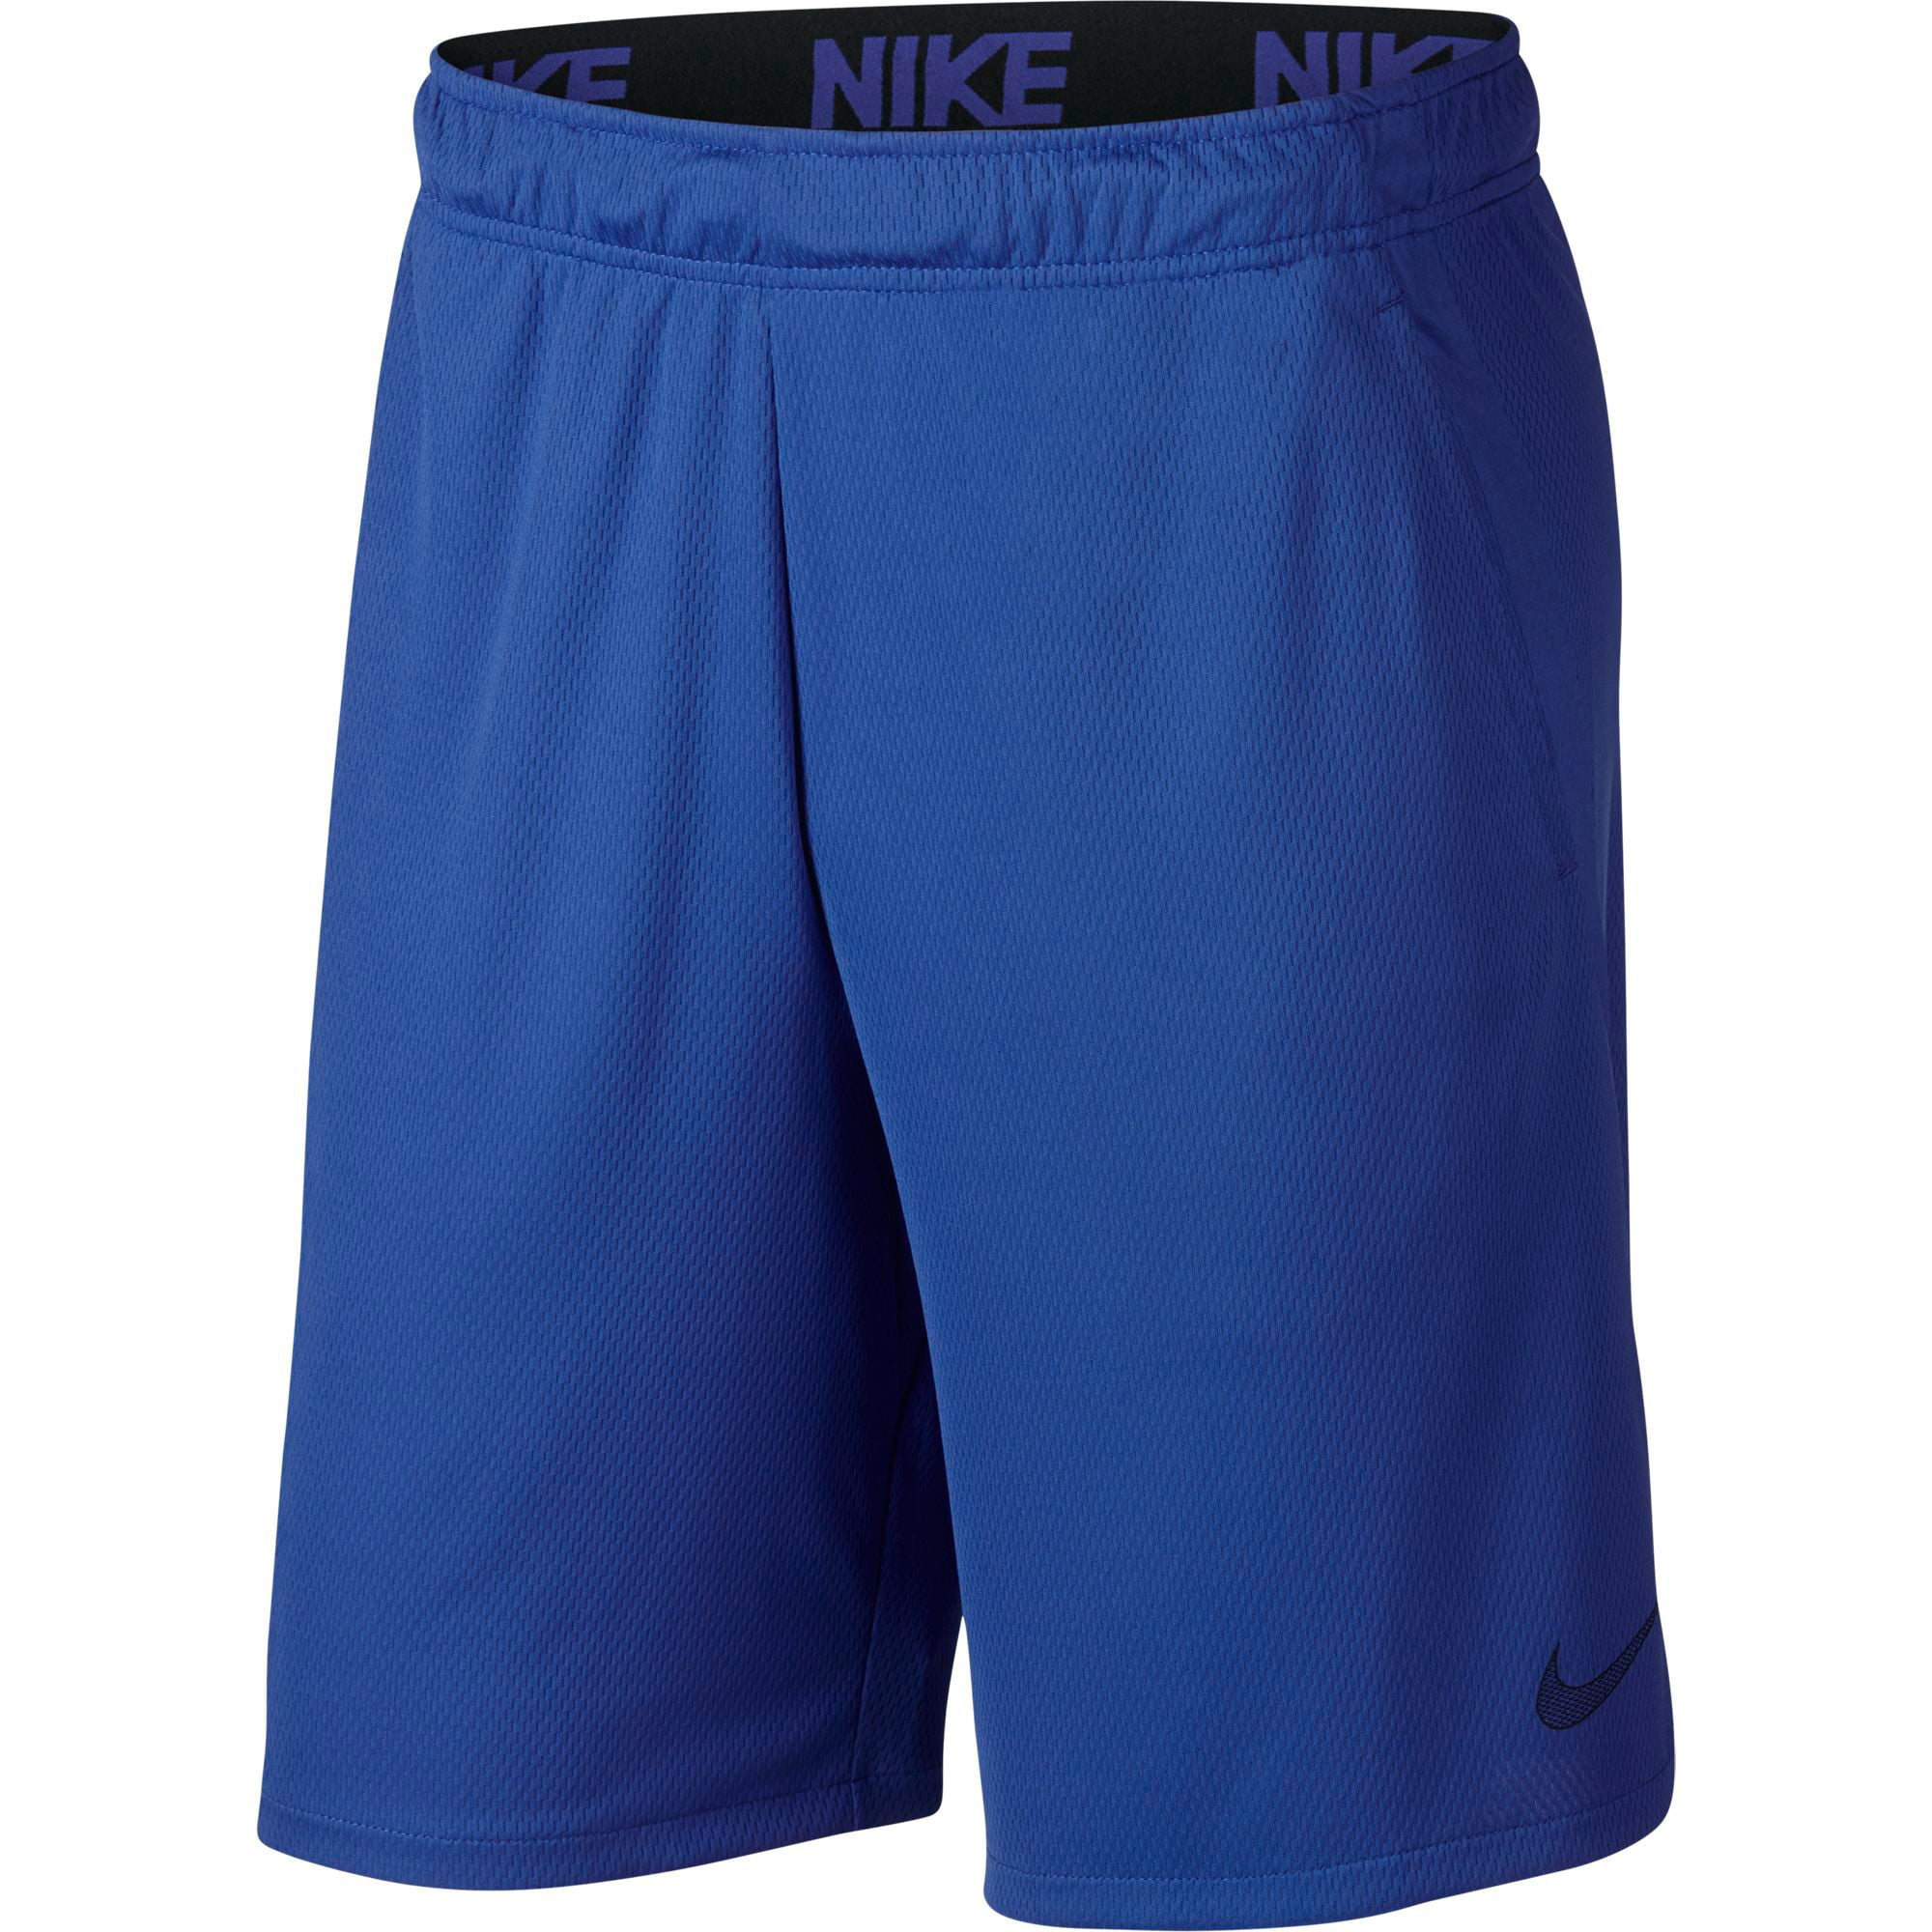 nike 4.0 training shorts